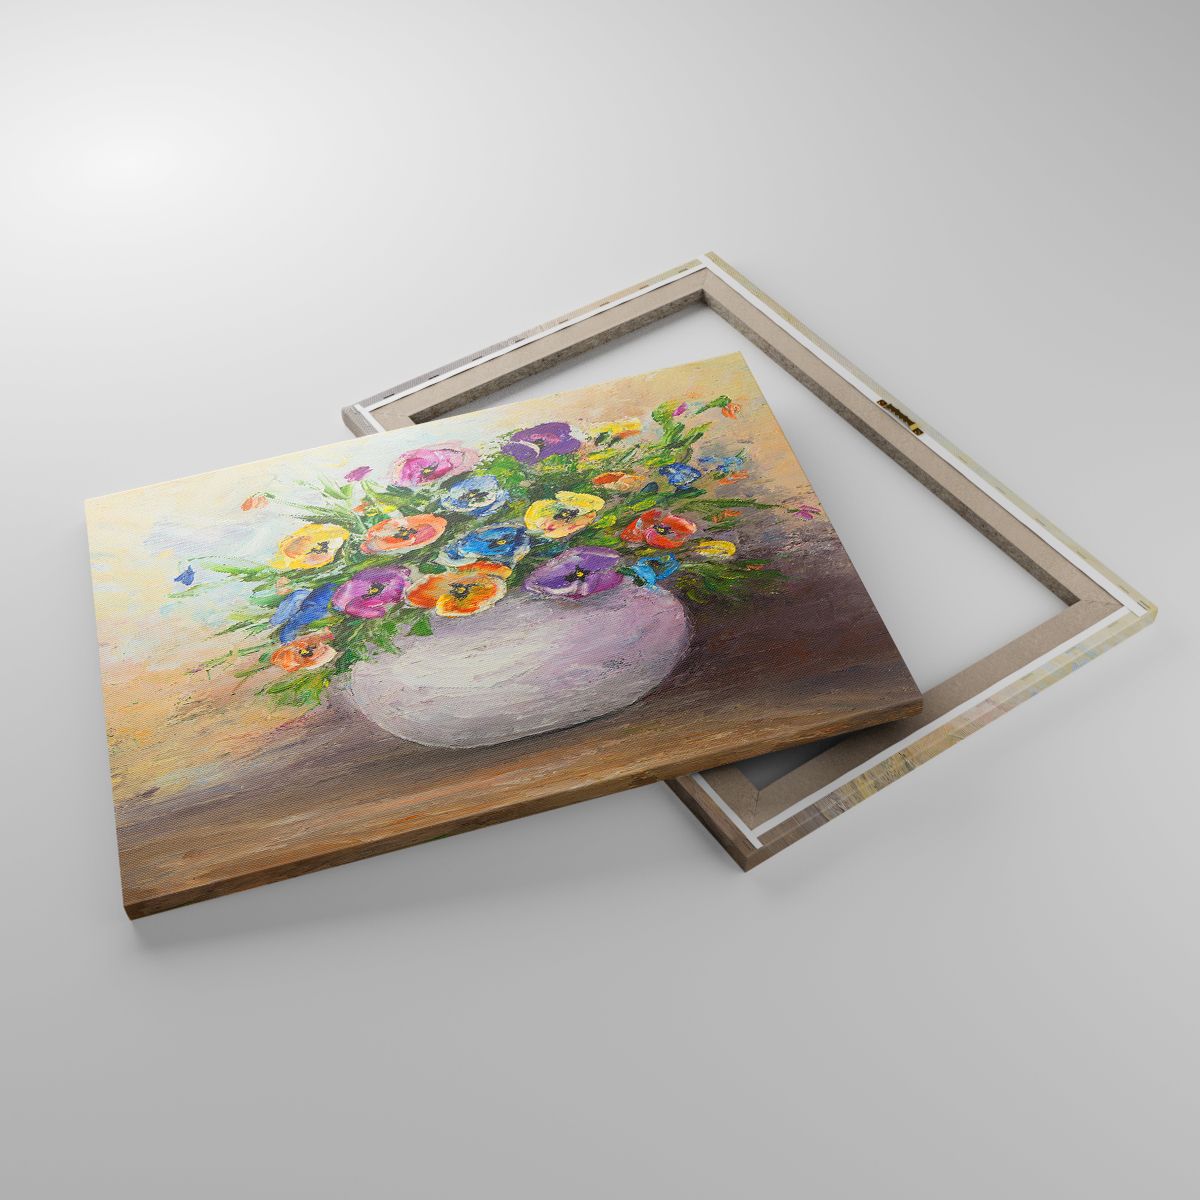 Leinwandbild Blumen, Leinwandbild Vase Mit Blumen, Leinwandbild Impressionismus, Leinwandbild Stillleben, Leinwandbild Kunst